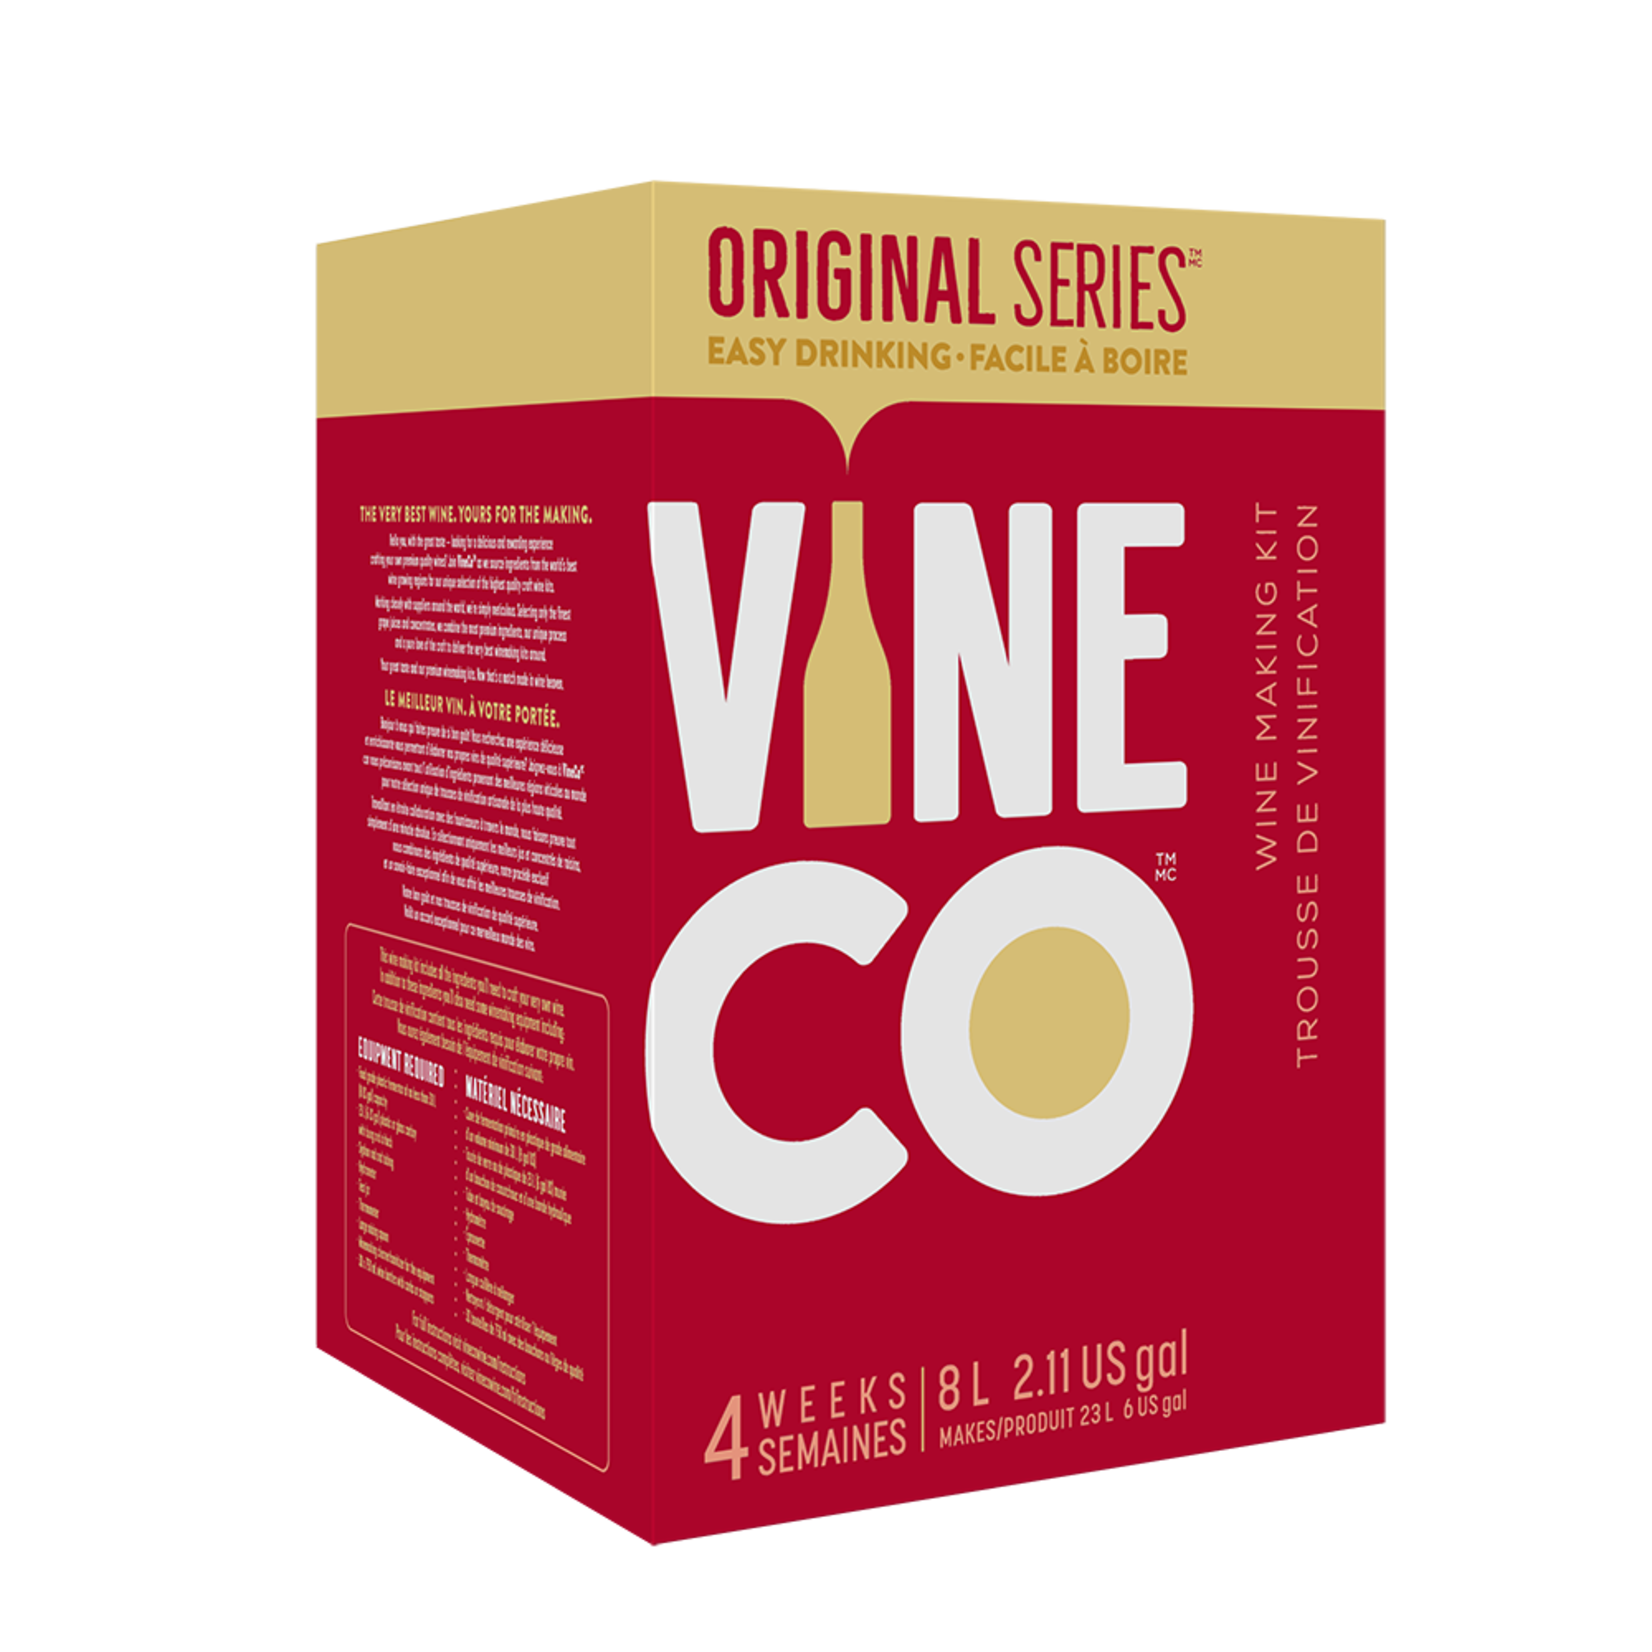 Vine Co. Original Series California Sol Chenin Blanc Pinot Grigio Limited Release